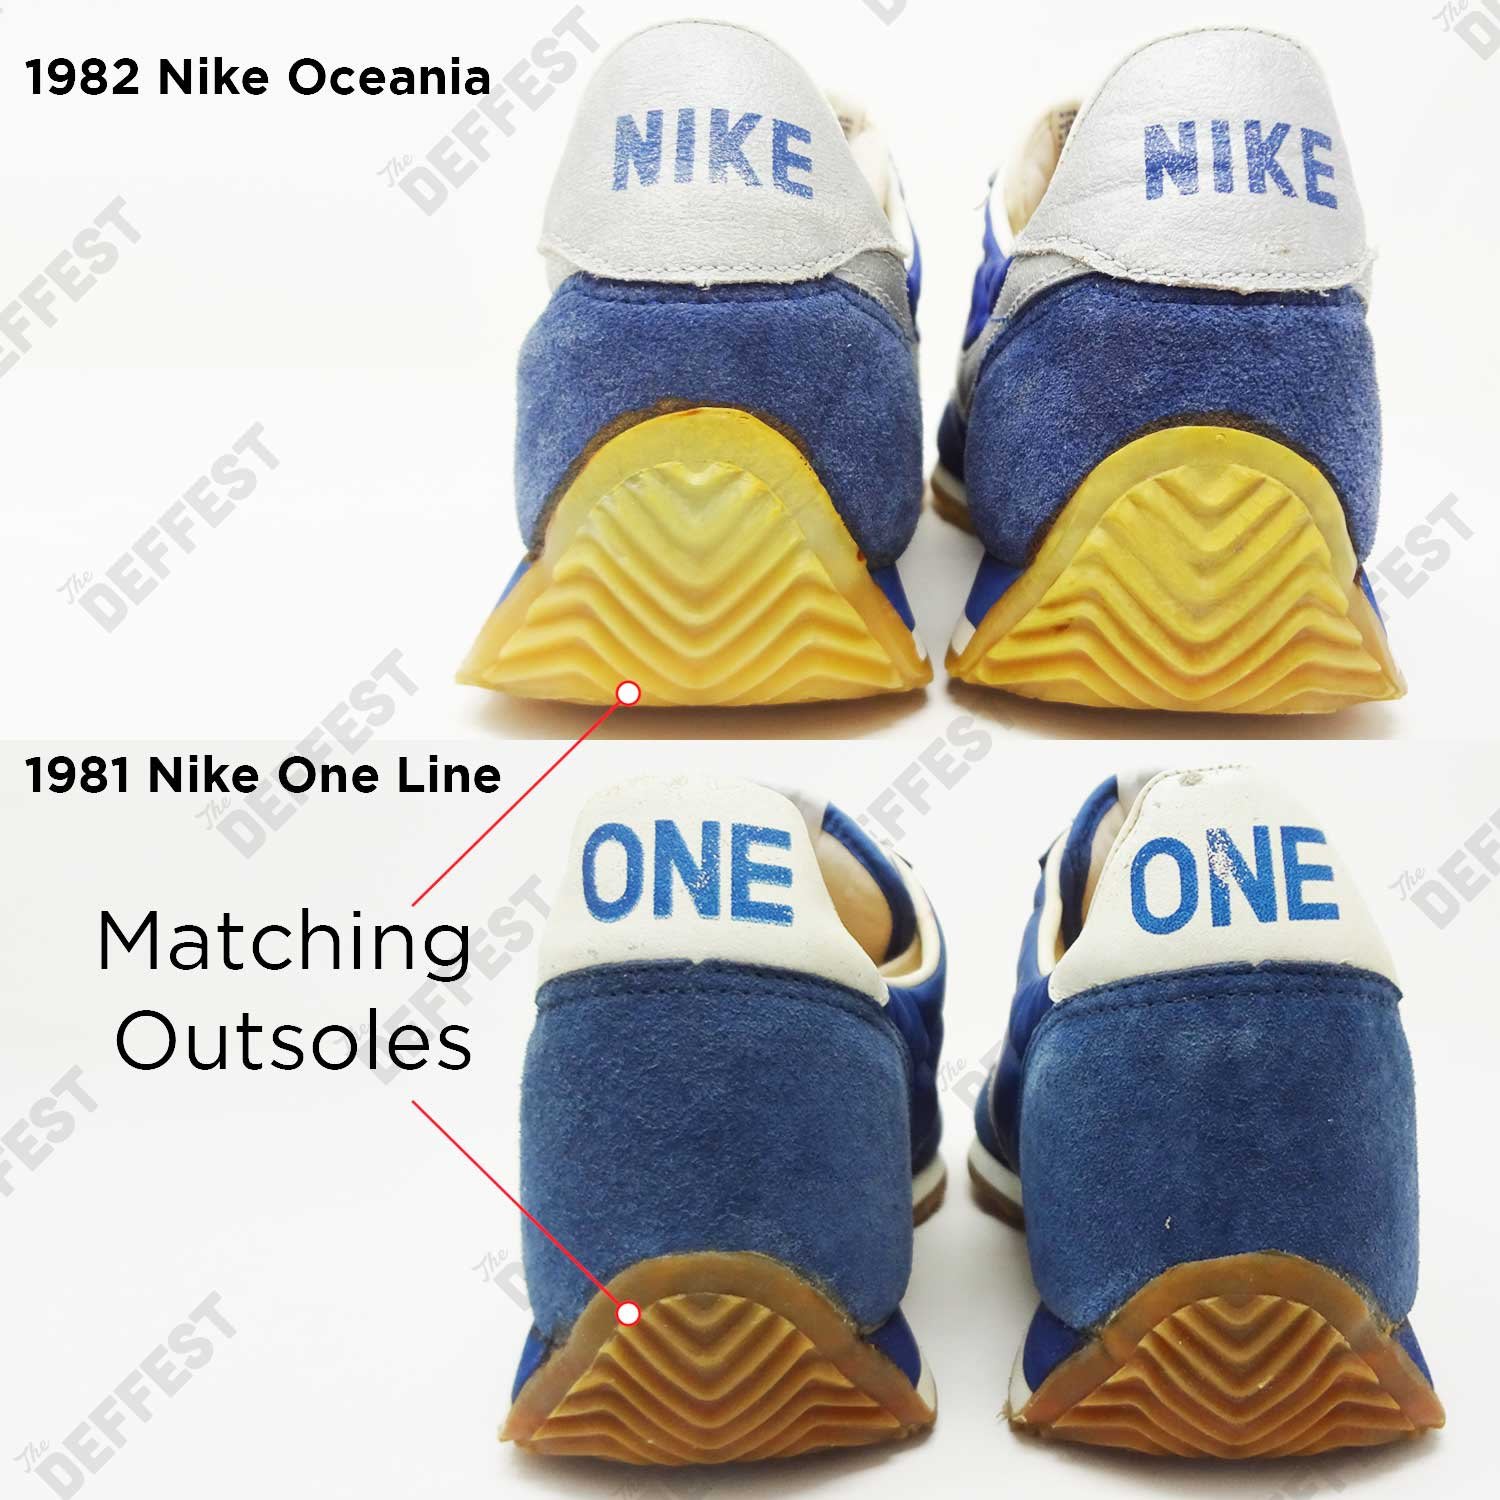 Nike Oceania 1